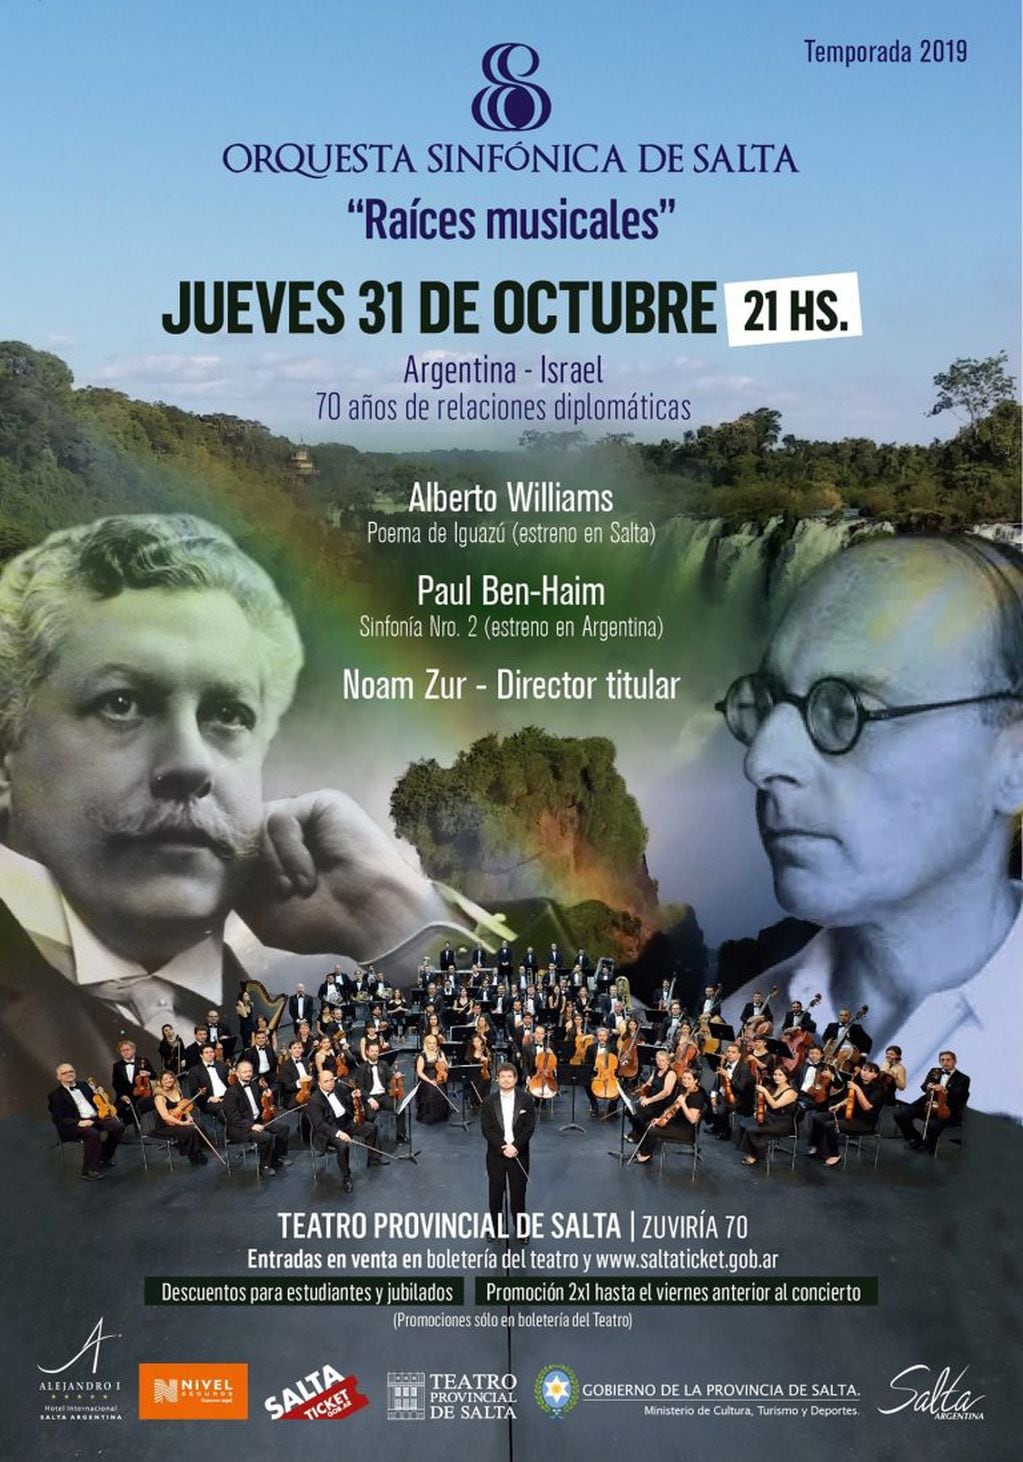 Orquesta Sinfónica de Salta en concierto (Facebook Orquesta Sinfónica de Salta)